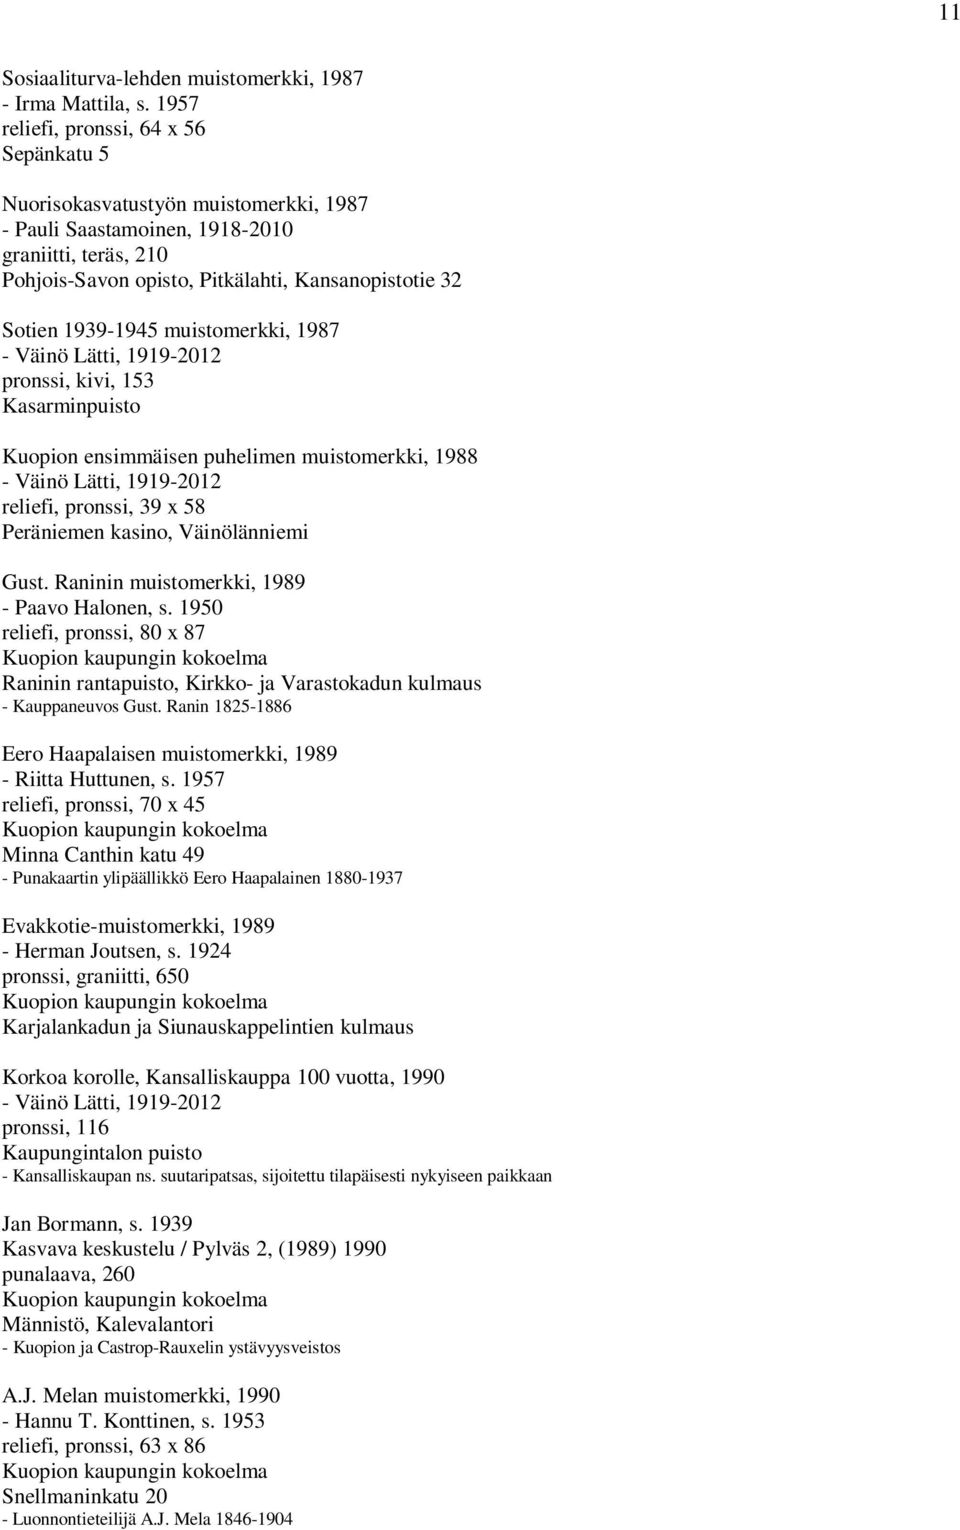 1939-1945 muistomerkki, 1987 pronssi, kivi, 153 Kasarminpuisto Kuopion ensimmäisen puhelimen muistomerkki, 1988 reliefi, pronssi, 39 x 58 Peräniemen kasino, Väinölänniemi Gust.